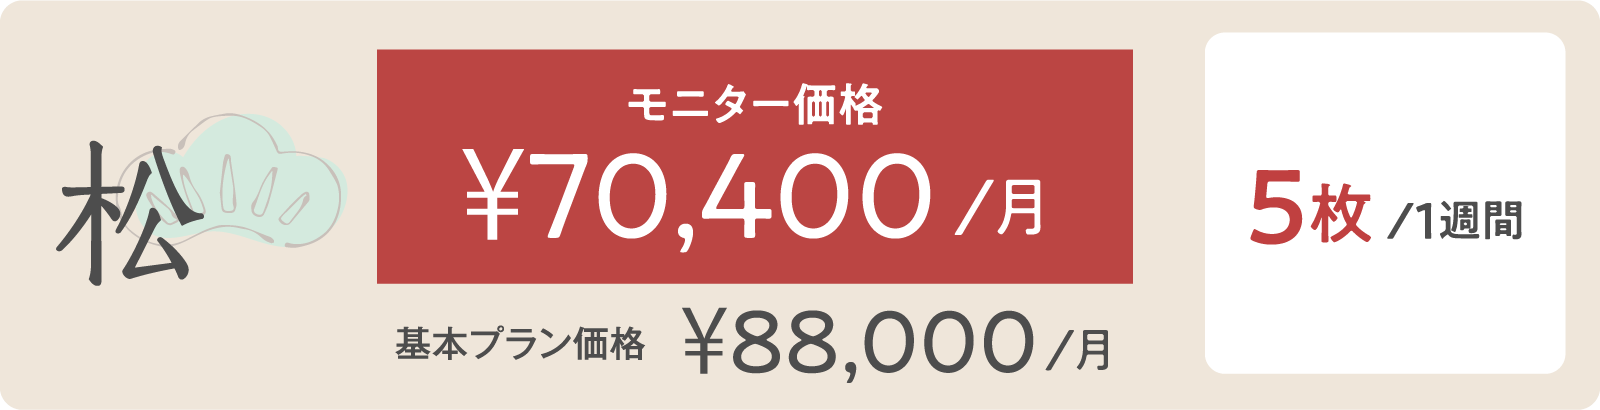 松モニター価格 ¥70,400/月 5枚/１週間